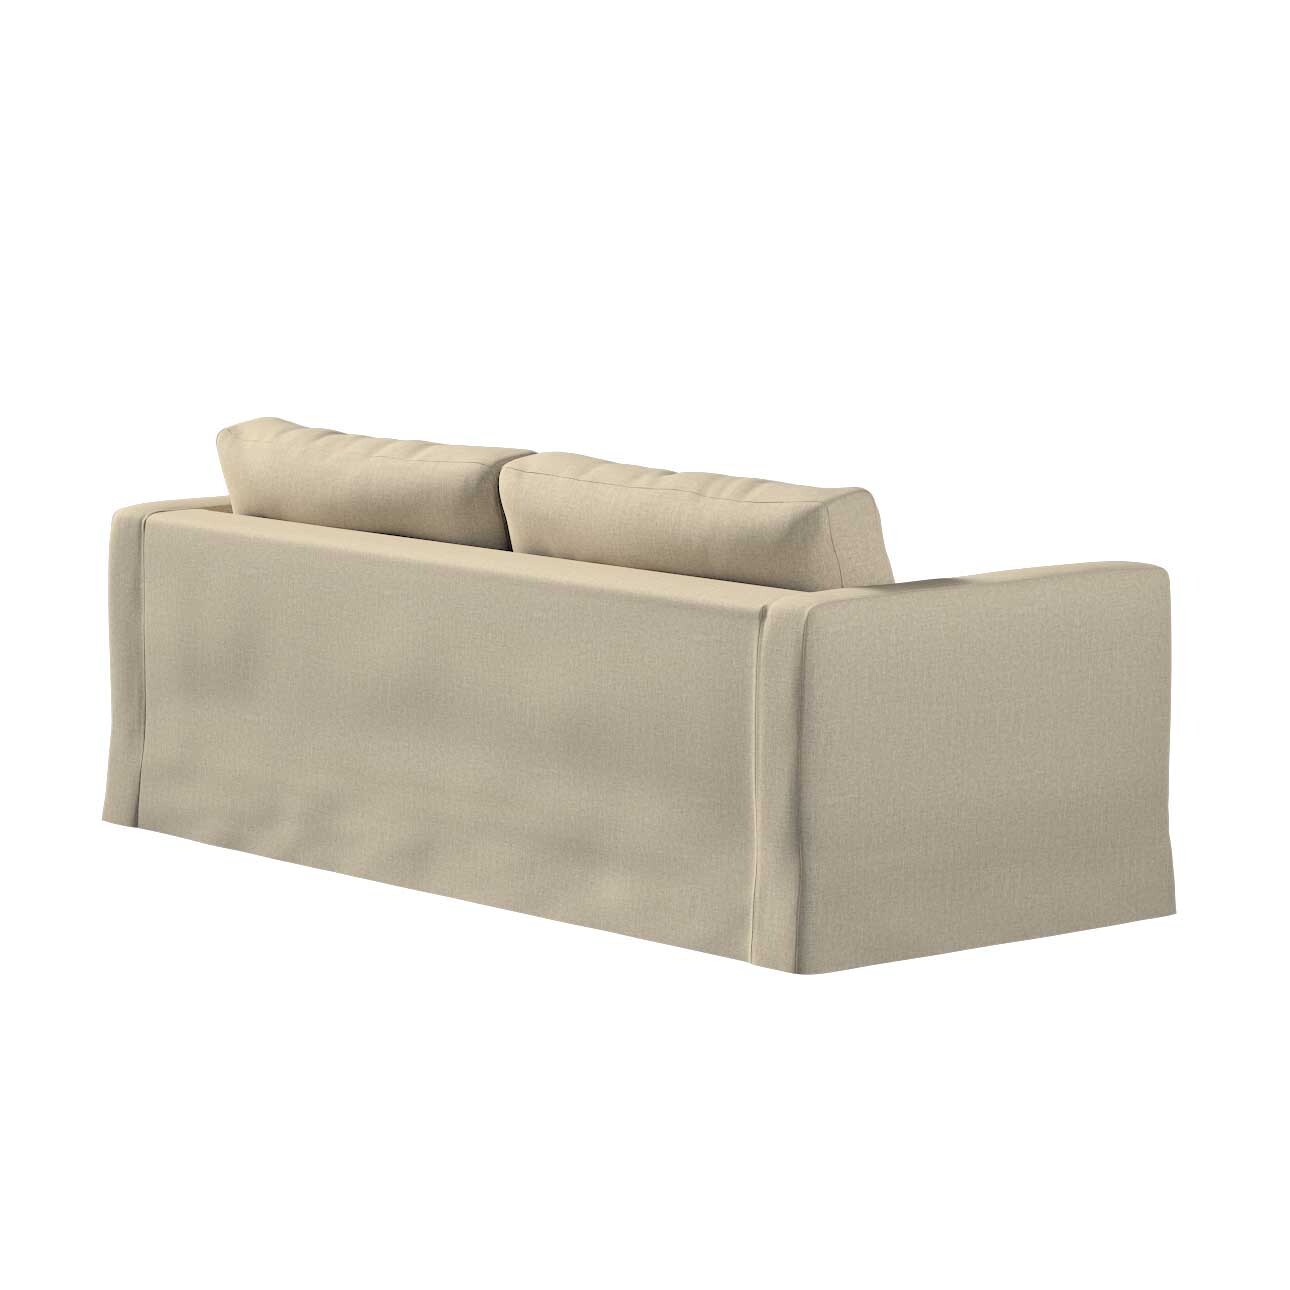 Bezug für Karlstad 3-Sitzer Sofa nicht ausklappbar, lang, beige- grau, Bezu günstig online kaufen